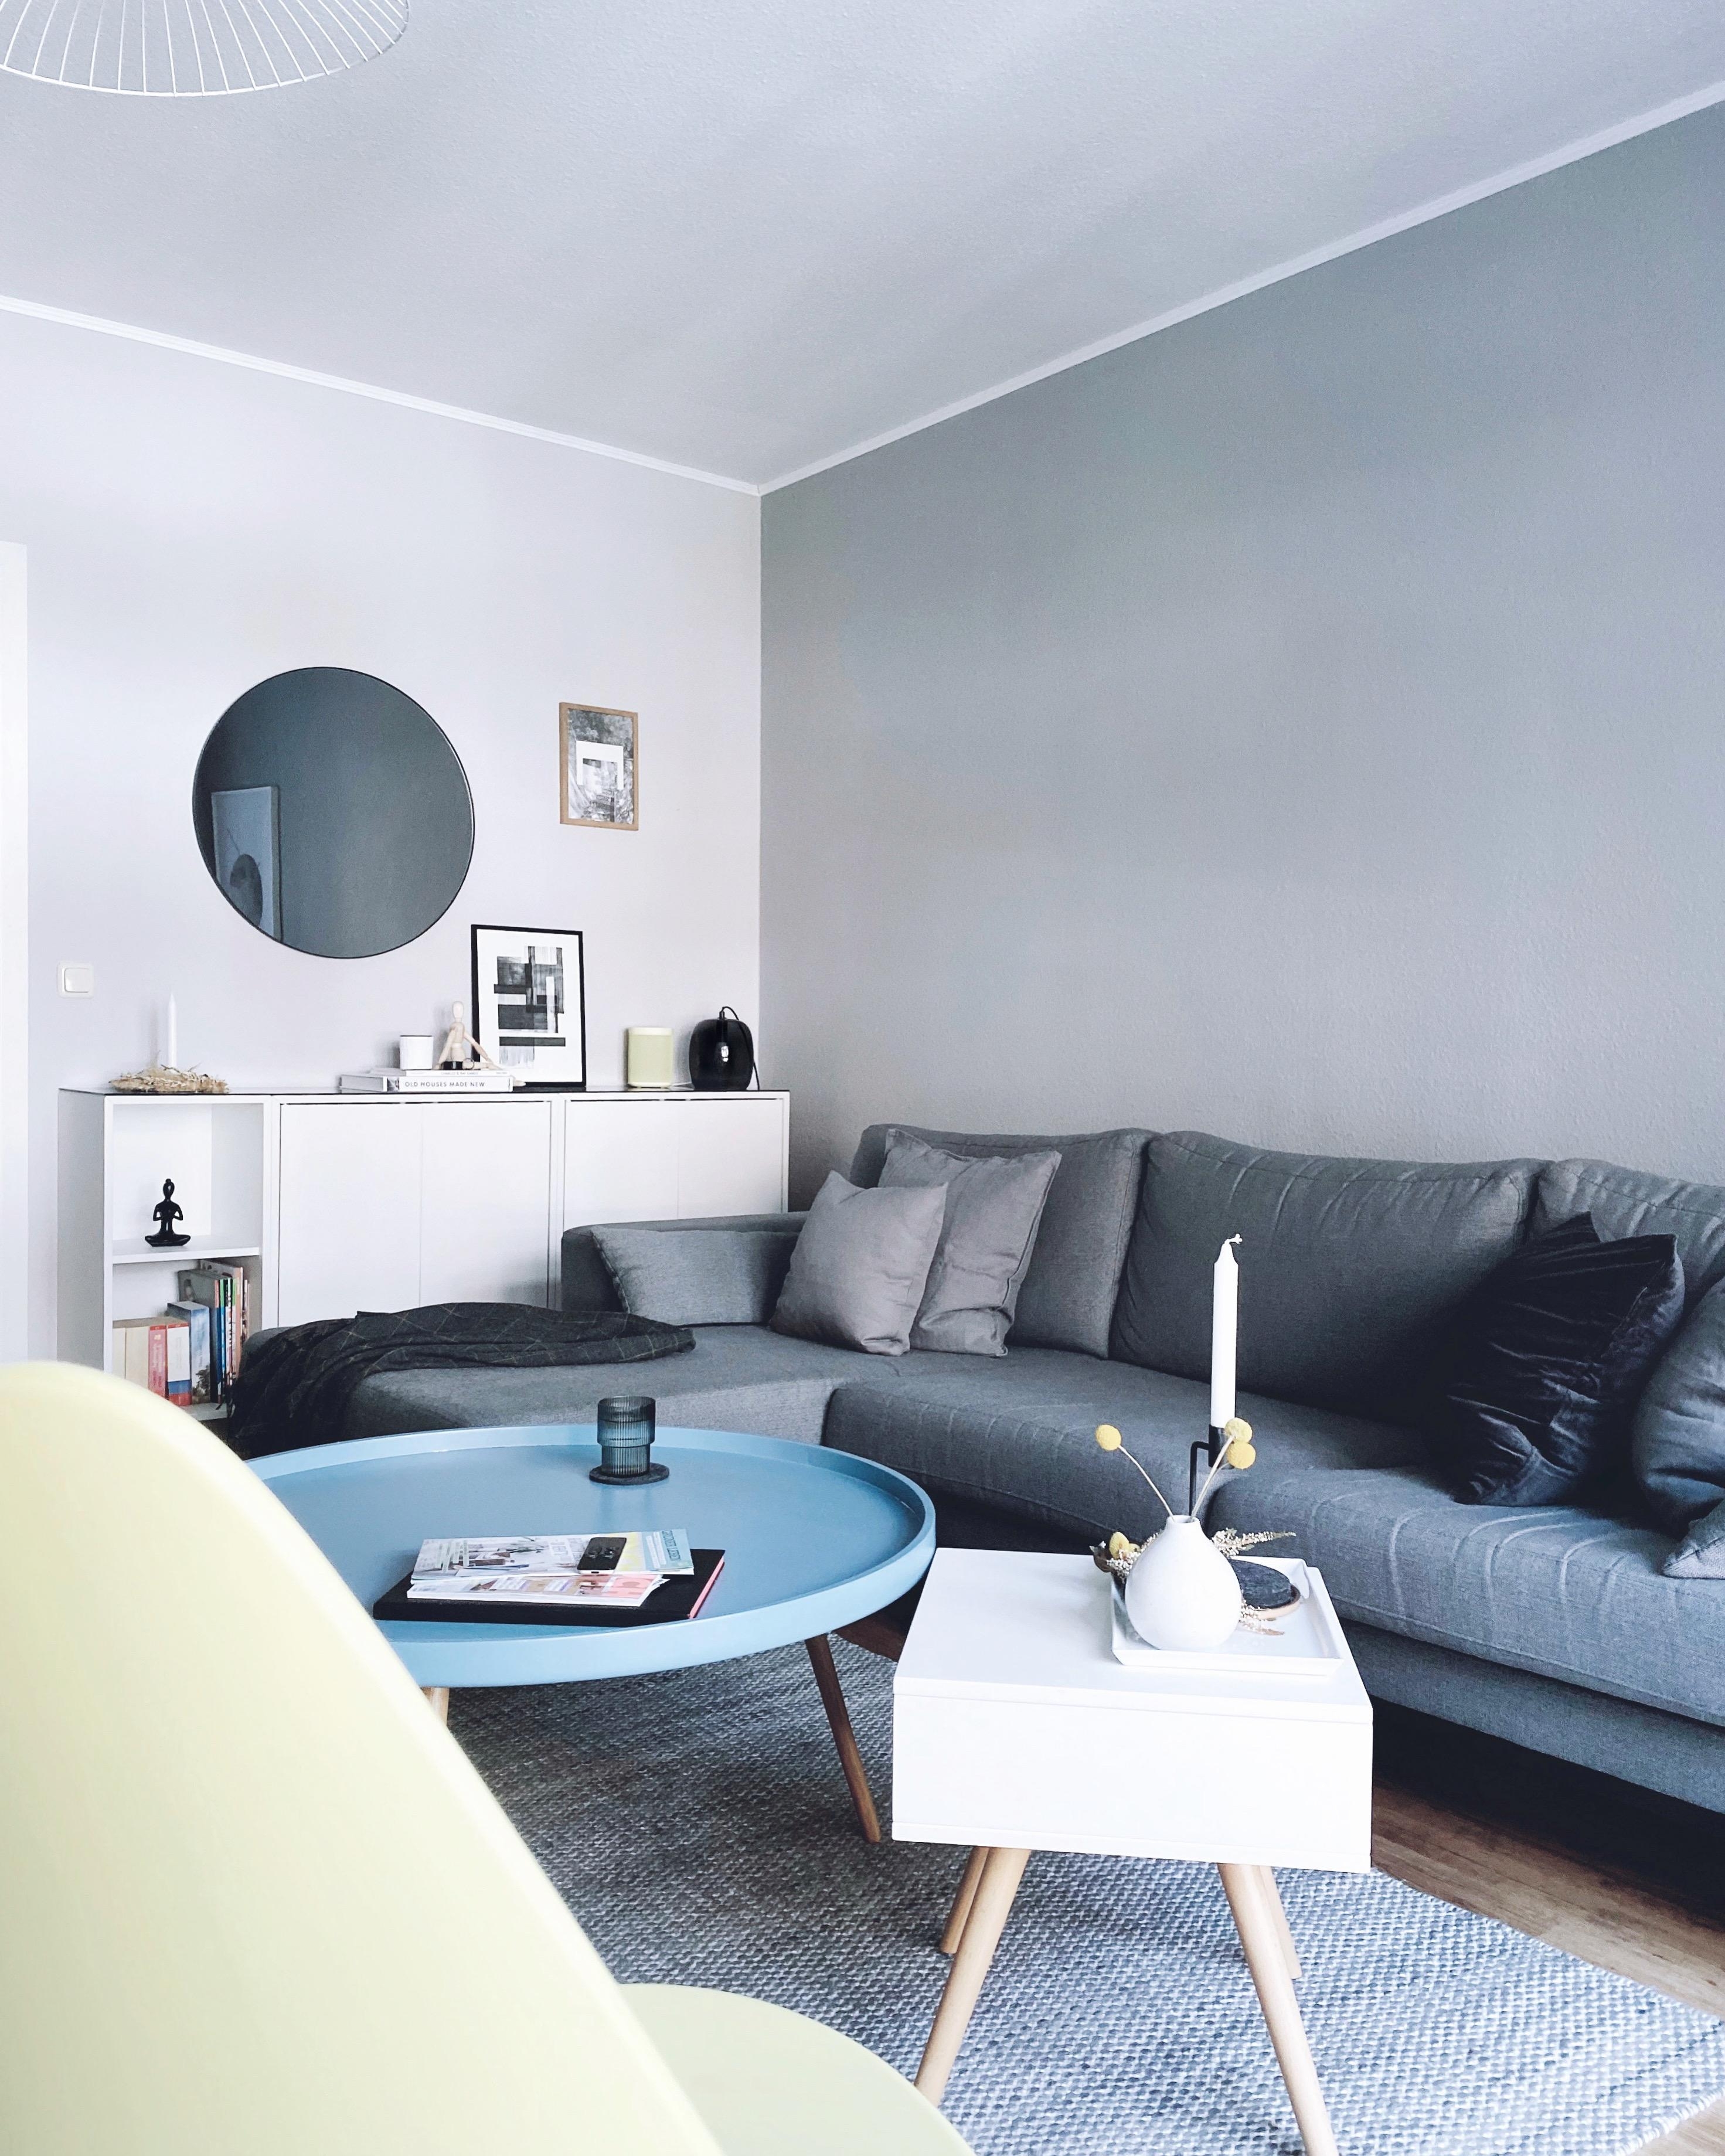 Livingroom
#nordicroom #interior #scandinavianhome #livingroom #hygge #monochrome #livingroomgoals